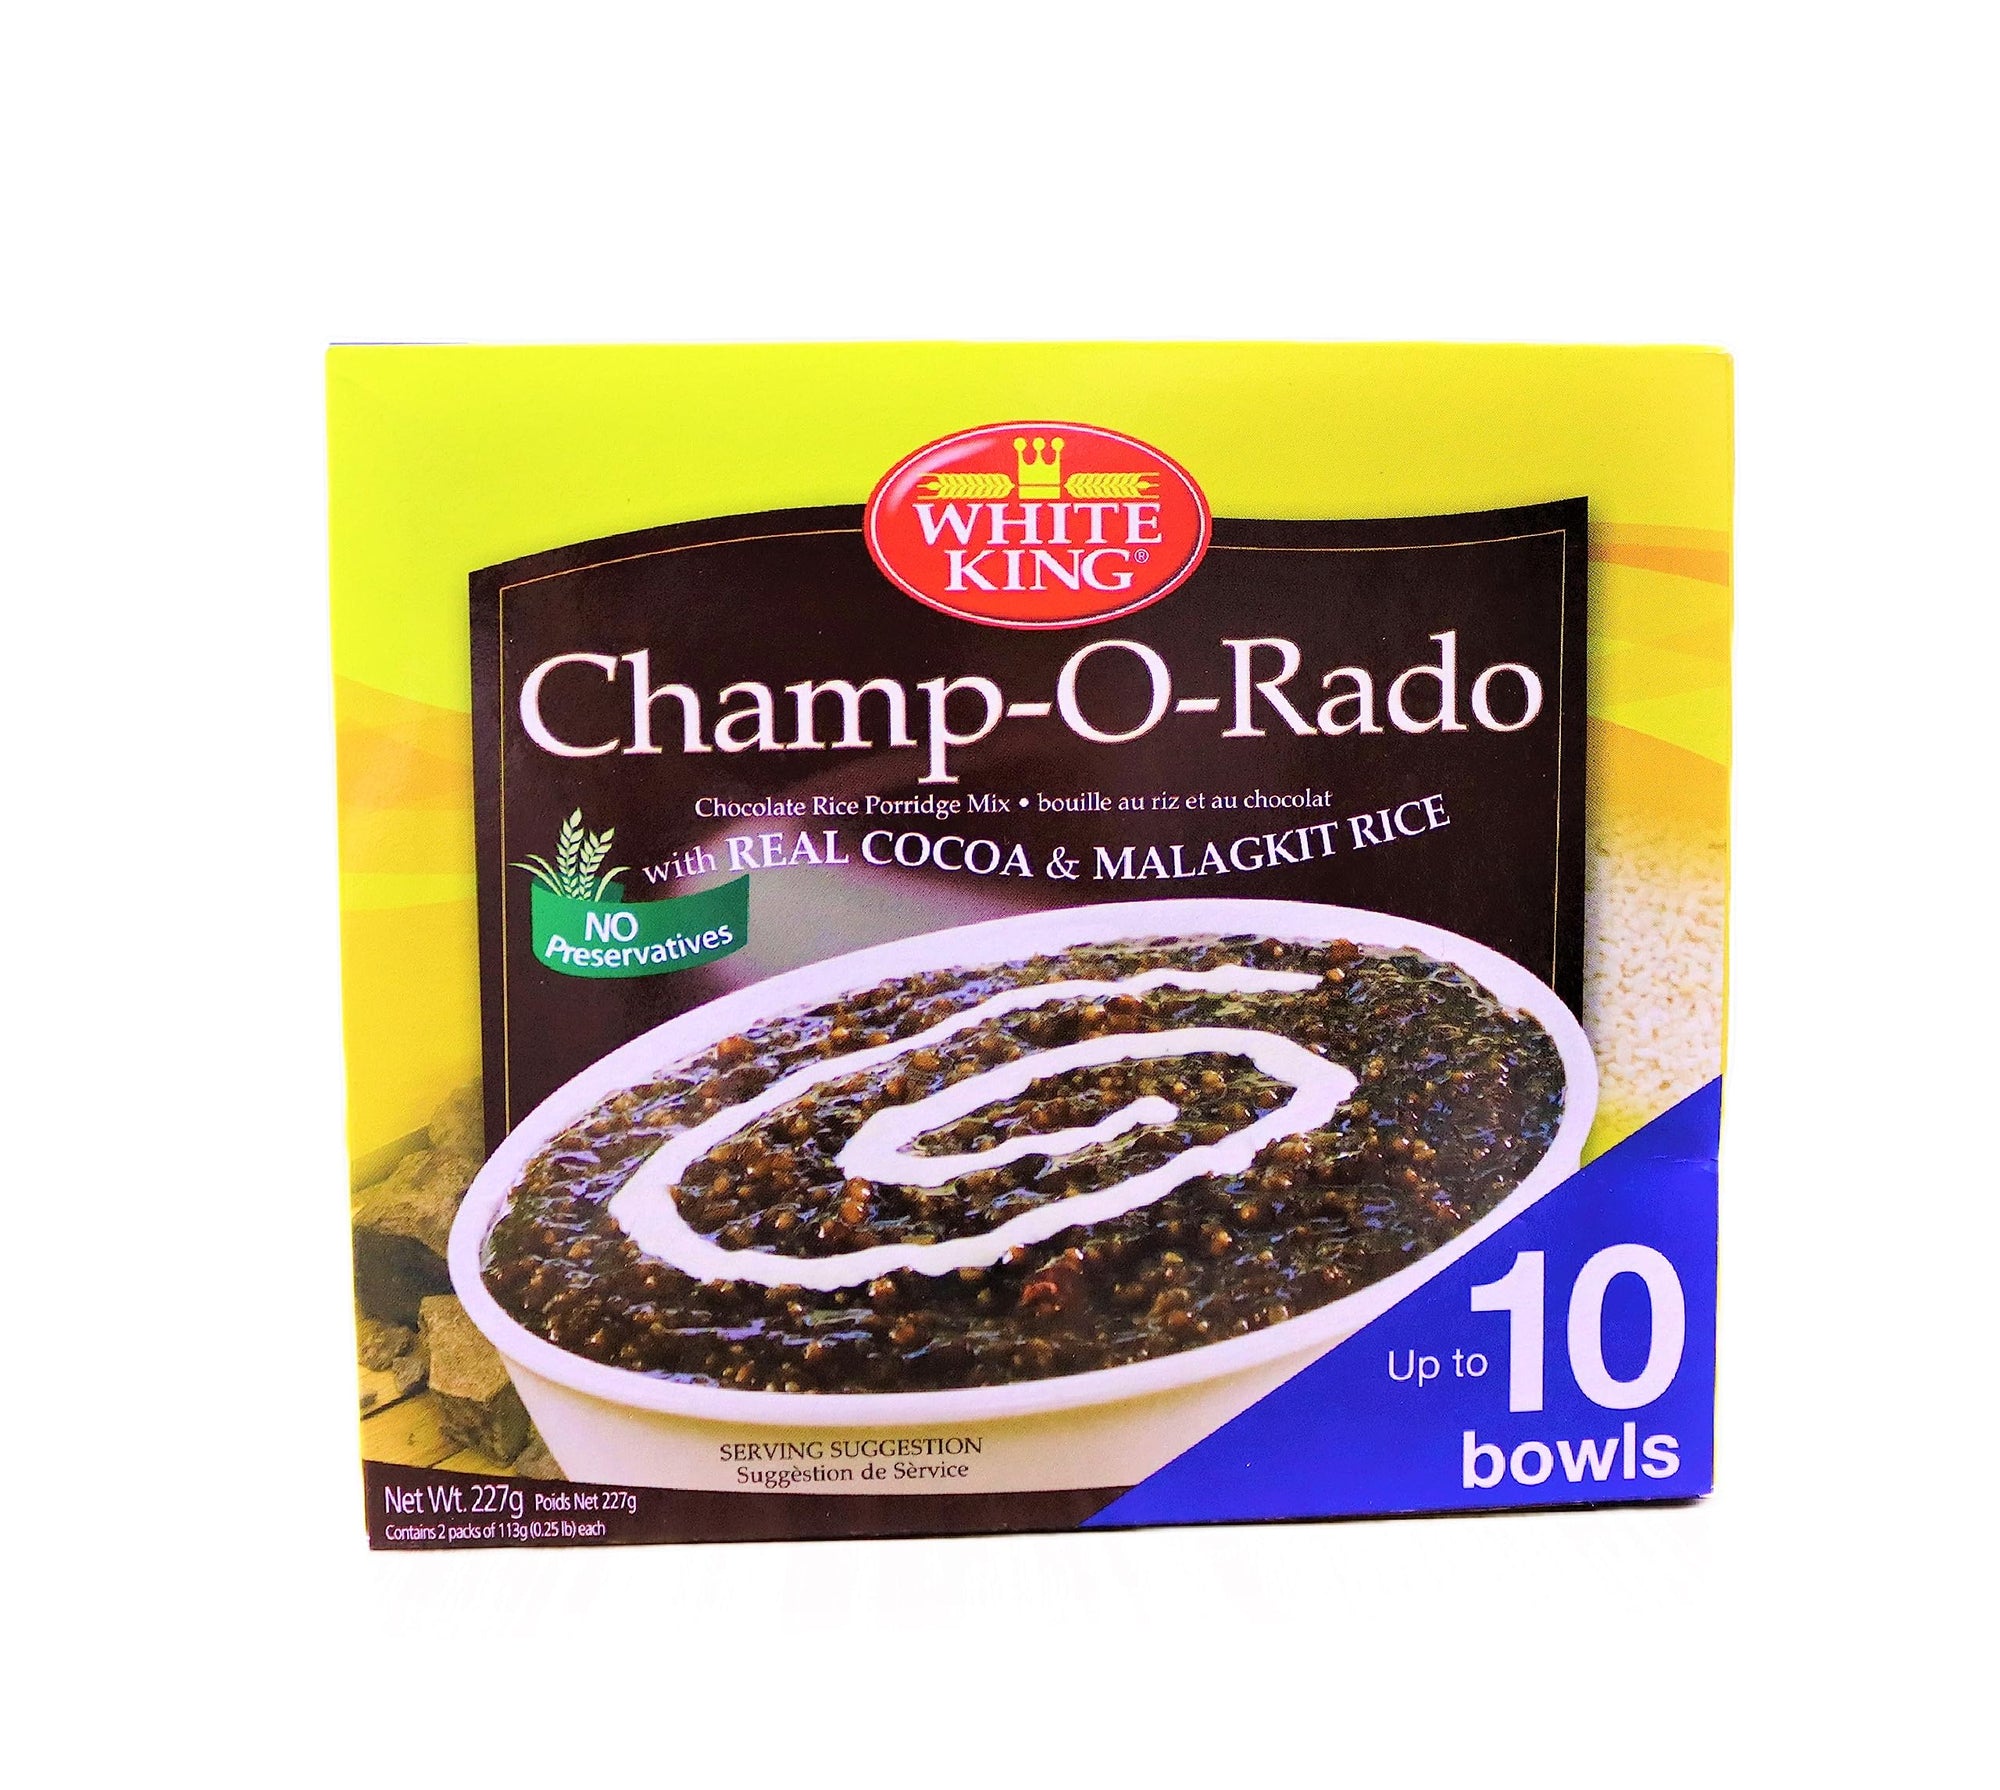 White King Champ-O-Rado Chocolate Rice Porridge Mix